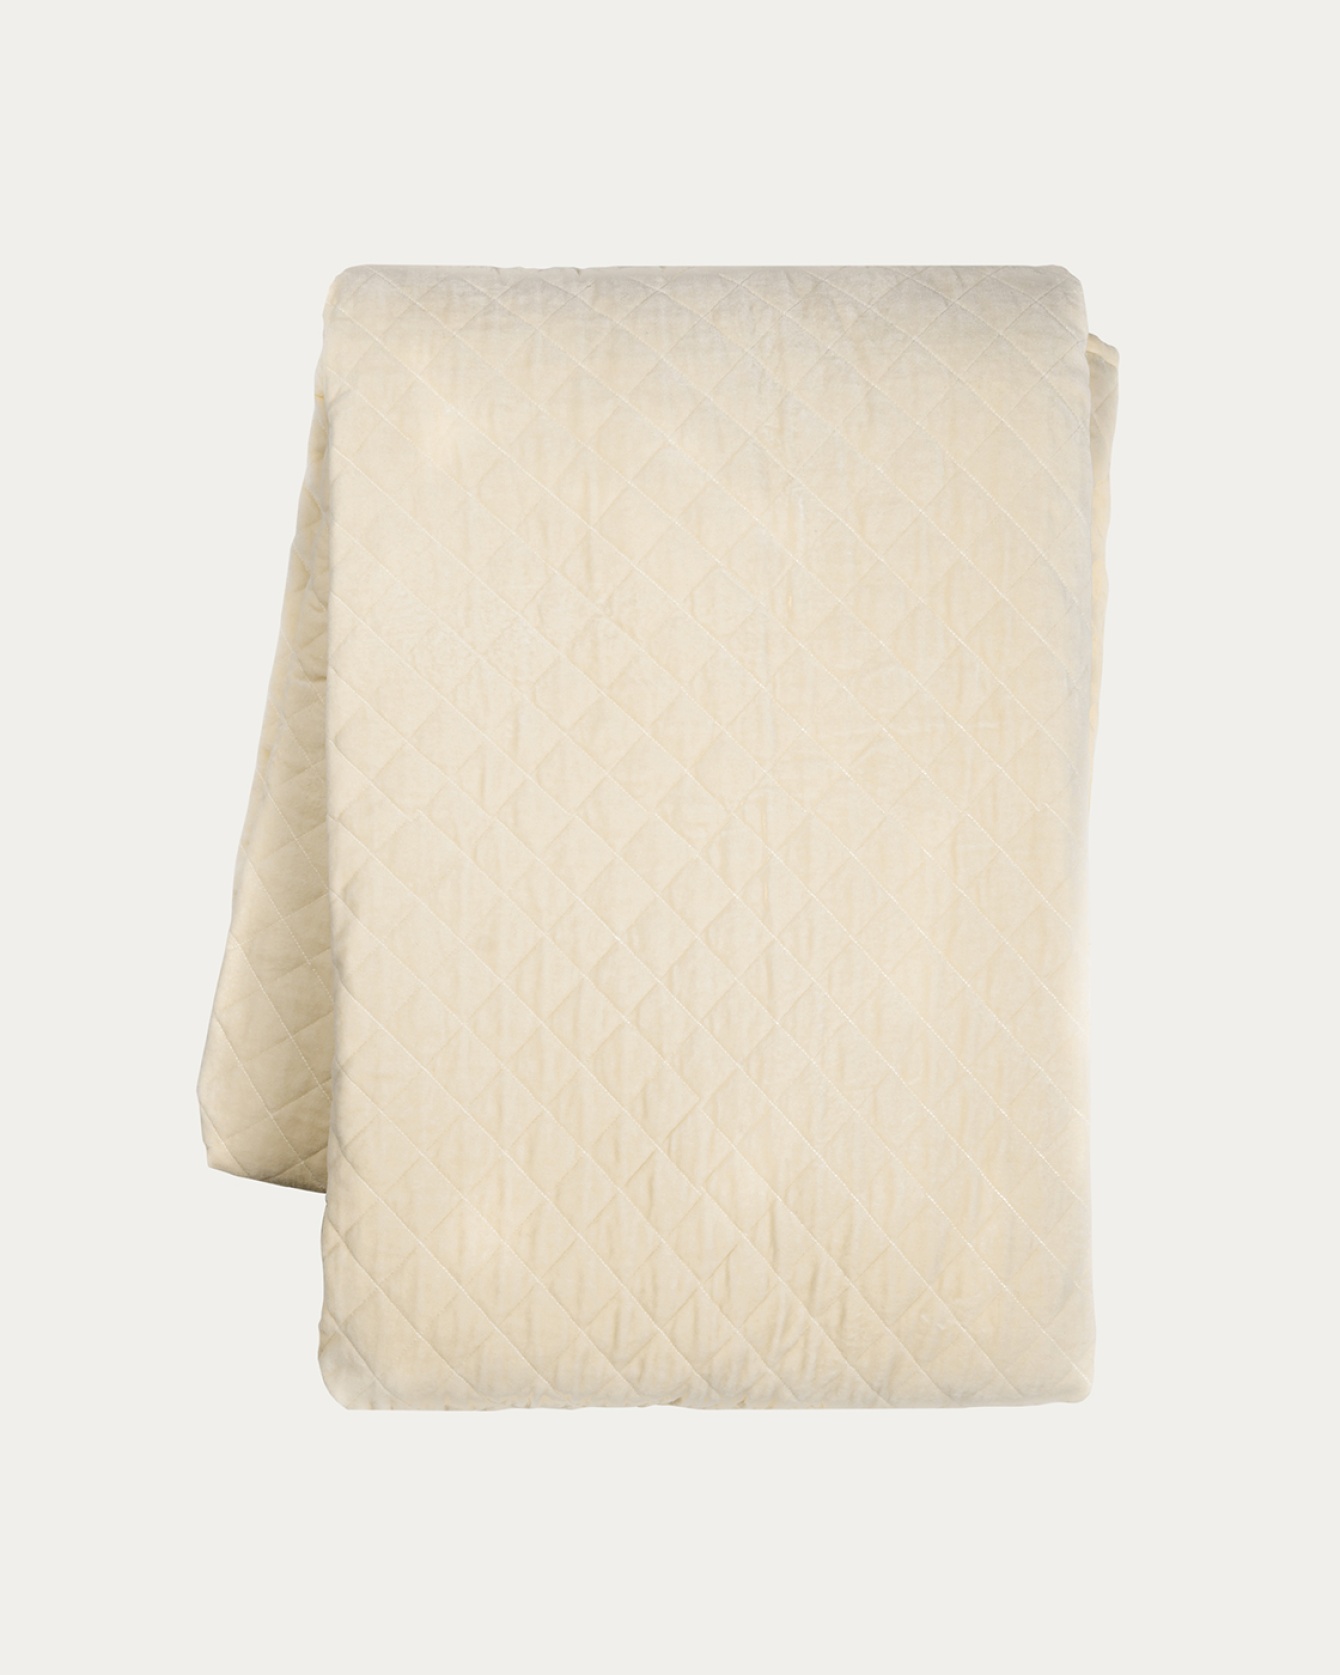 Produktbild cremebeige Tagesdecke PICCOLO aus weichem Baumwollsamt für Einzelbett von LINUM DESIGN. Größe 170x260 cm.